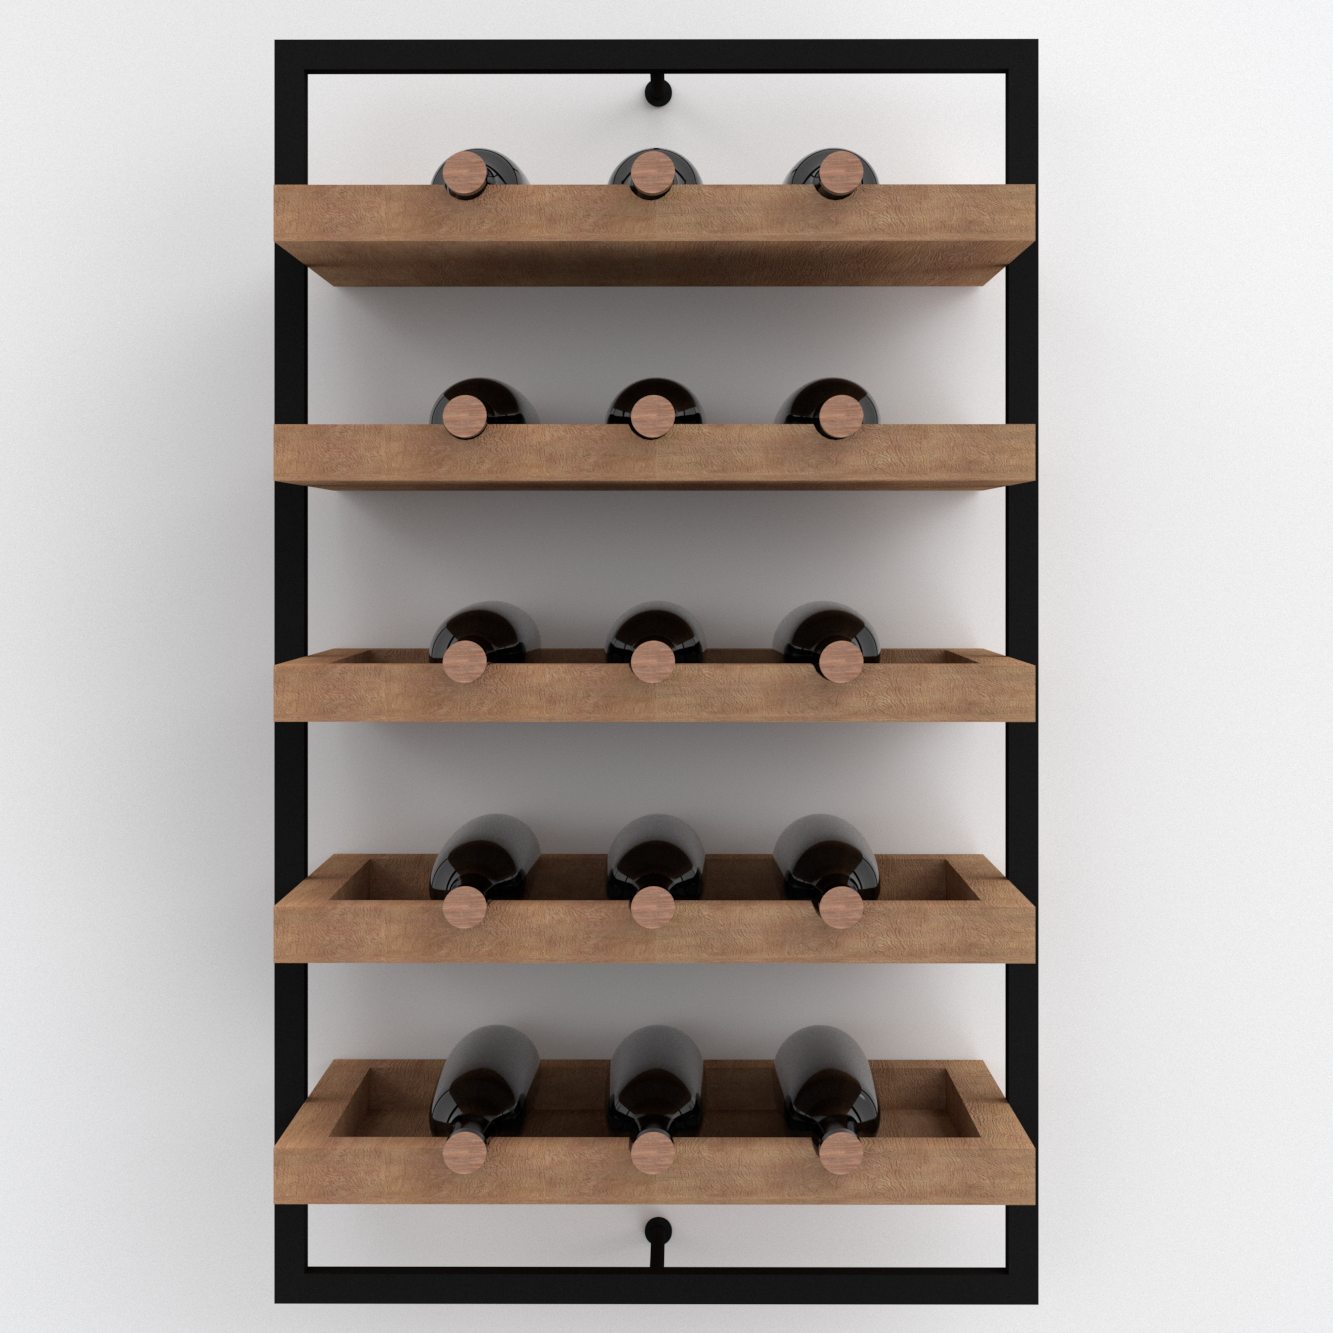 Cantinetta vino legno: quale portabottiglie in legno comprare?